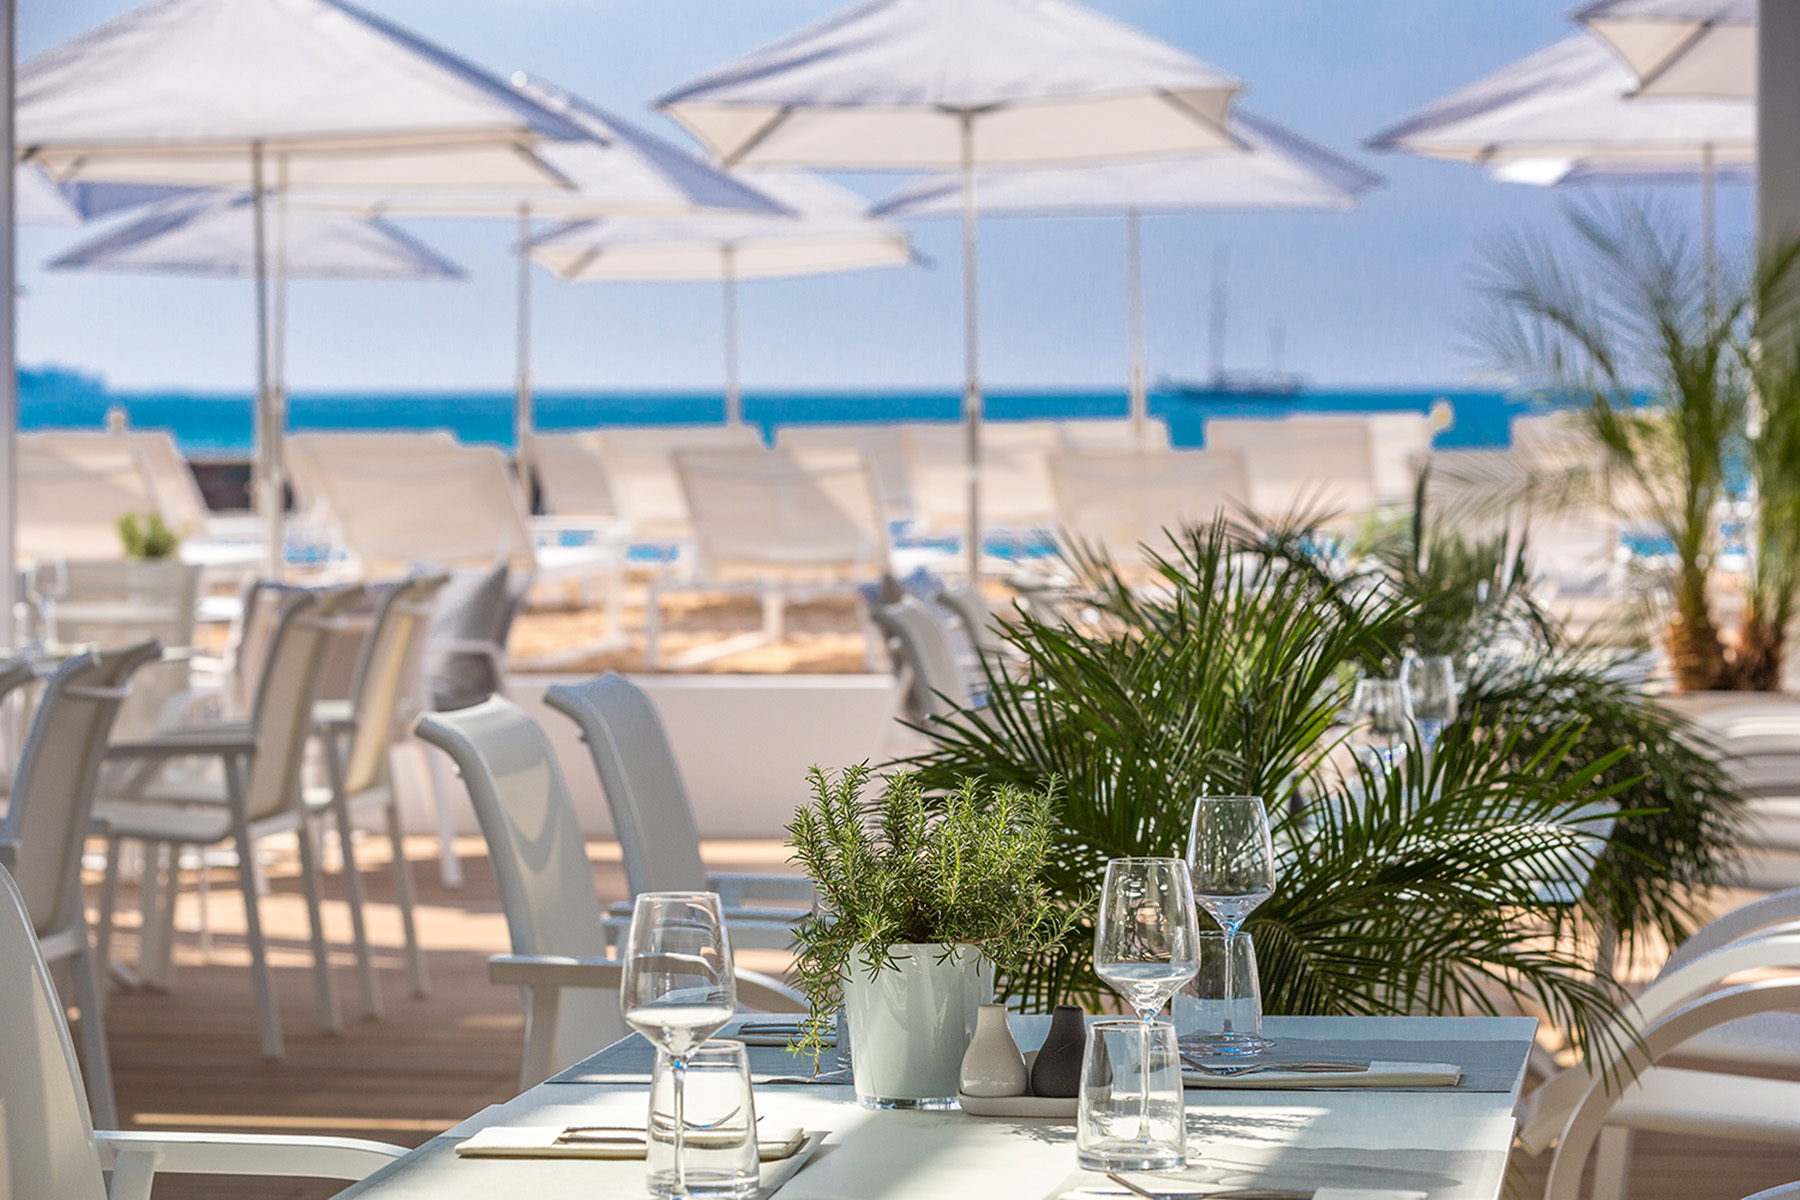 Terrasse avec vue sur la mer du restaurant le Majestic Barrière à Cannes, sur la côte d'Azur, hôtel barrière 5 étoiles designé par le studio d'architecture d'intérieur jean-philippe nuel